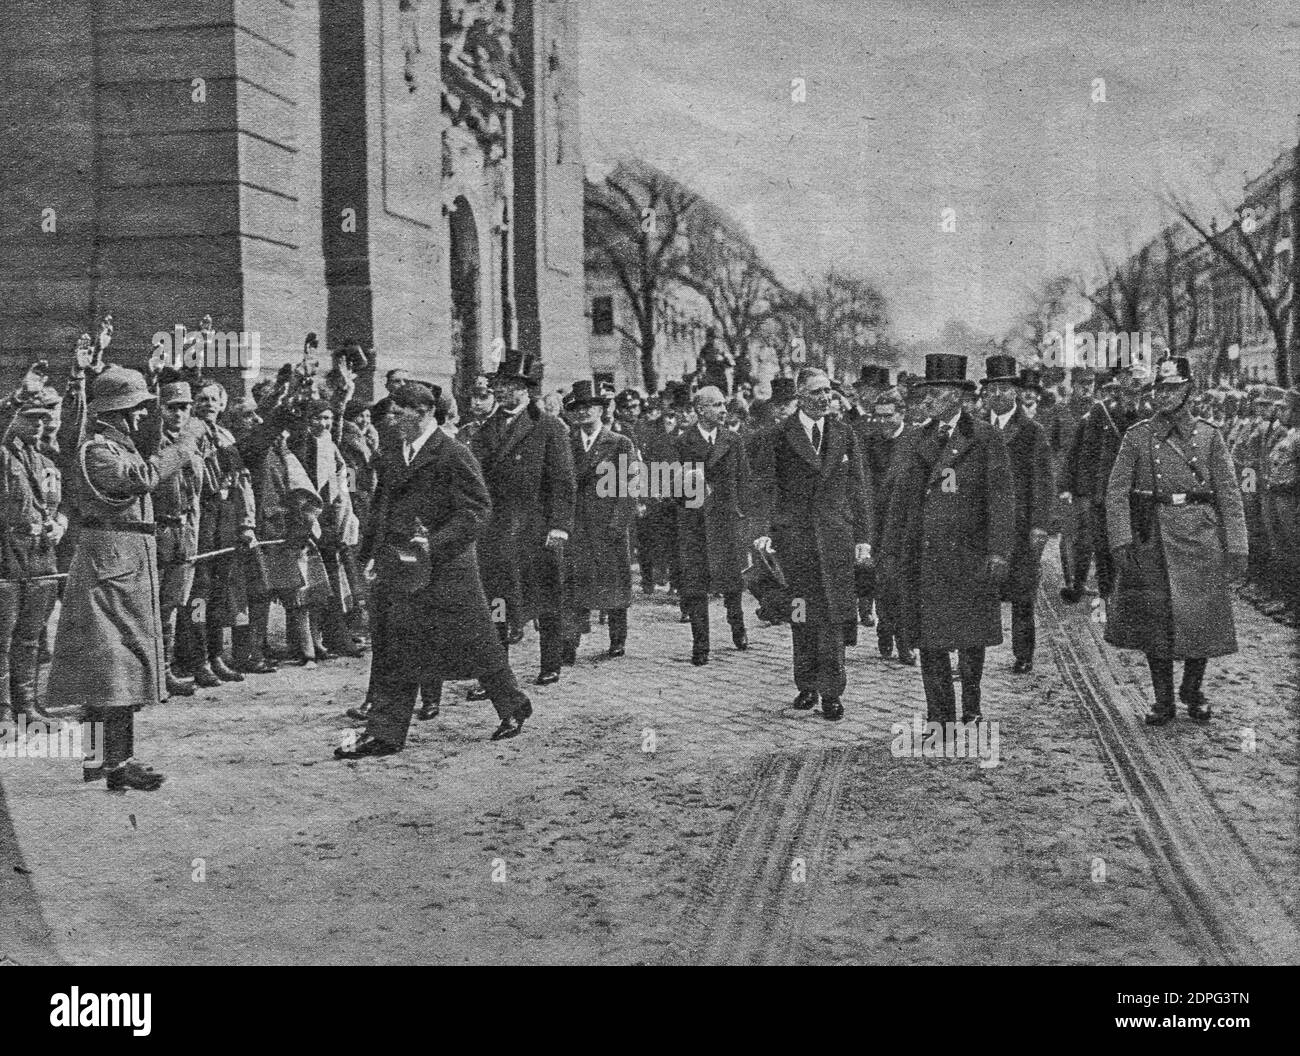 POTSDAM, 21. MÄRZ 1933: Adolf Hitler mit seinen Kabinettsministern auf dem Weg zur Garnisonskirche am Potsdamer Tag. Reproduktion von Ameisen Stockfoto